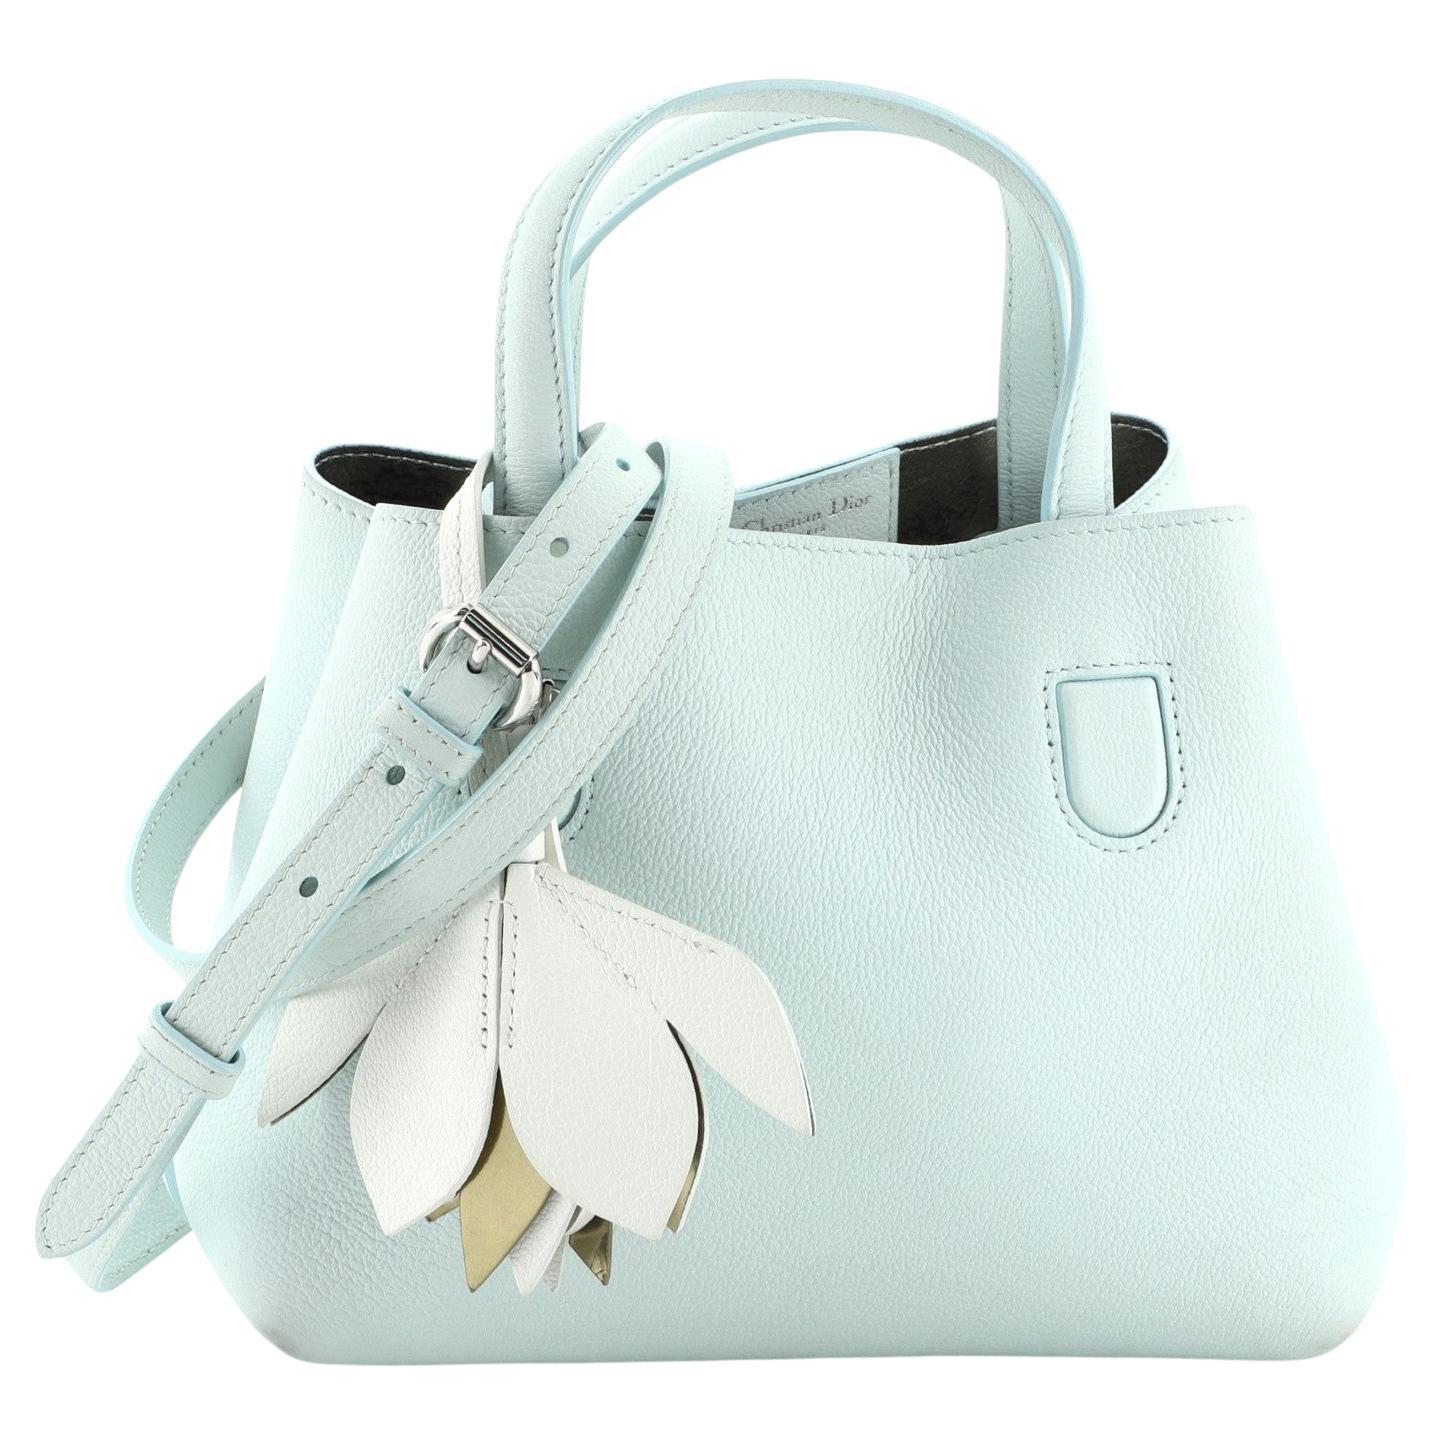 Christian Dior Blossom Handbag Leather Small